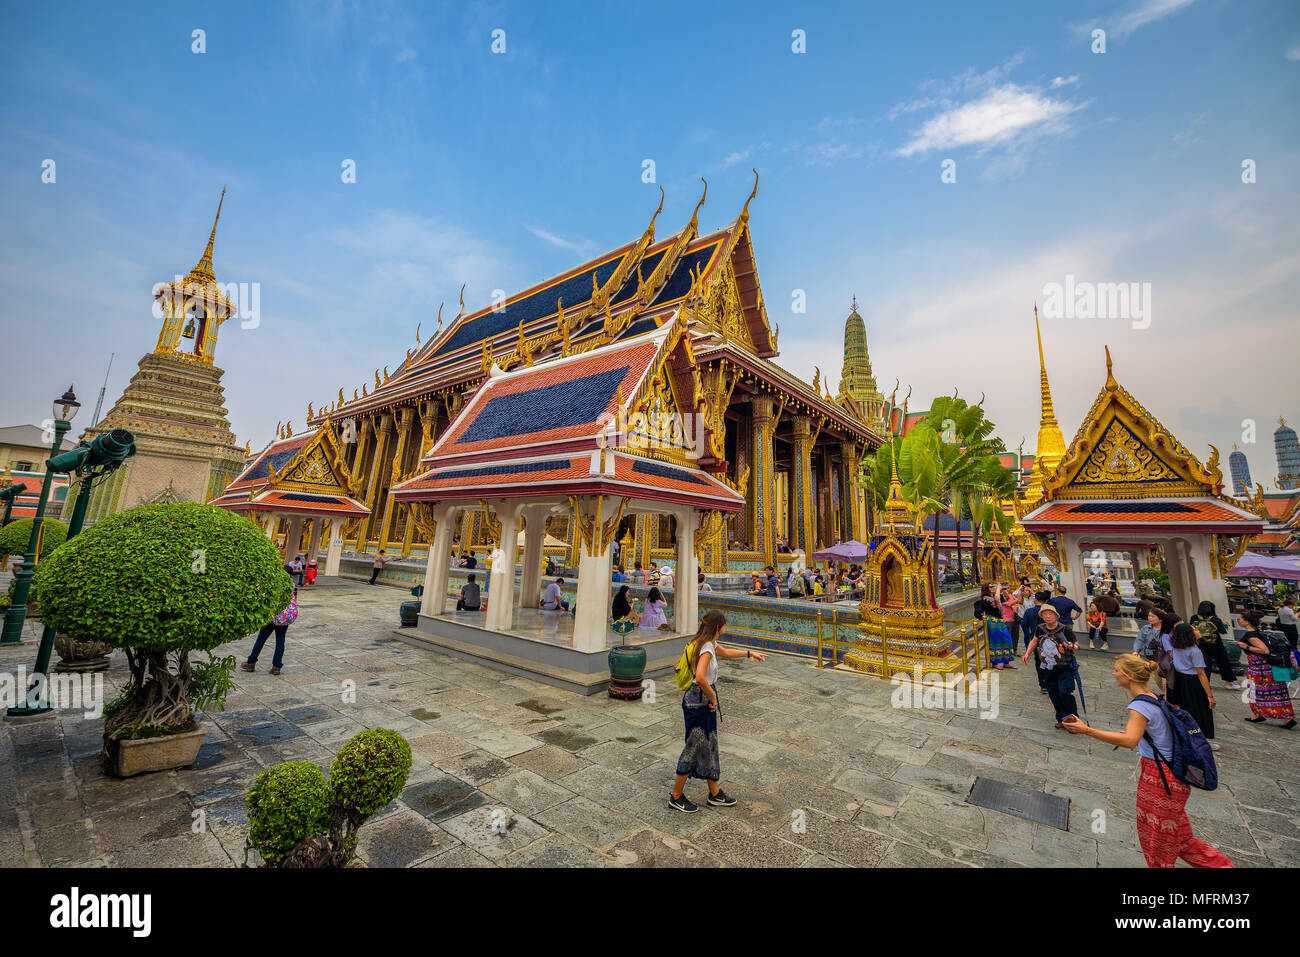 Grand palace in Bangkok, Thailand Stock Photo